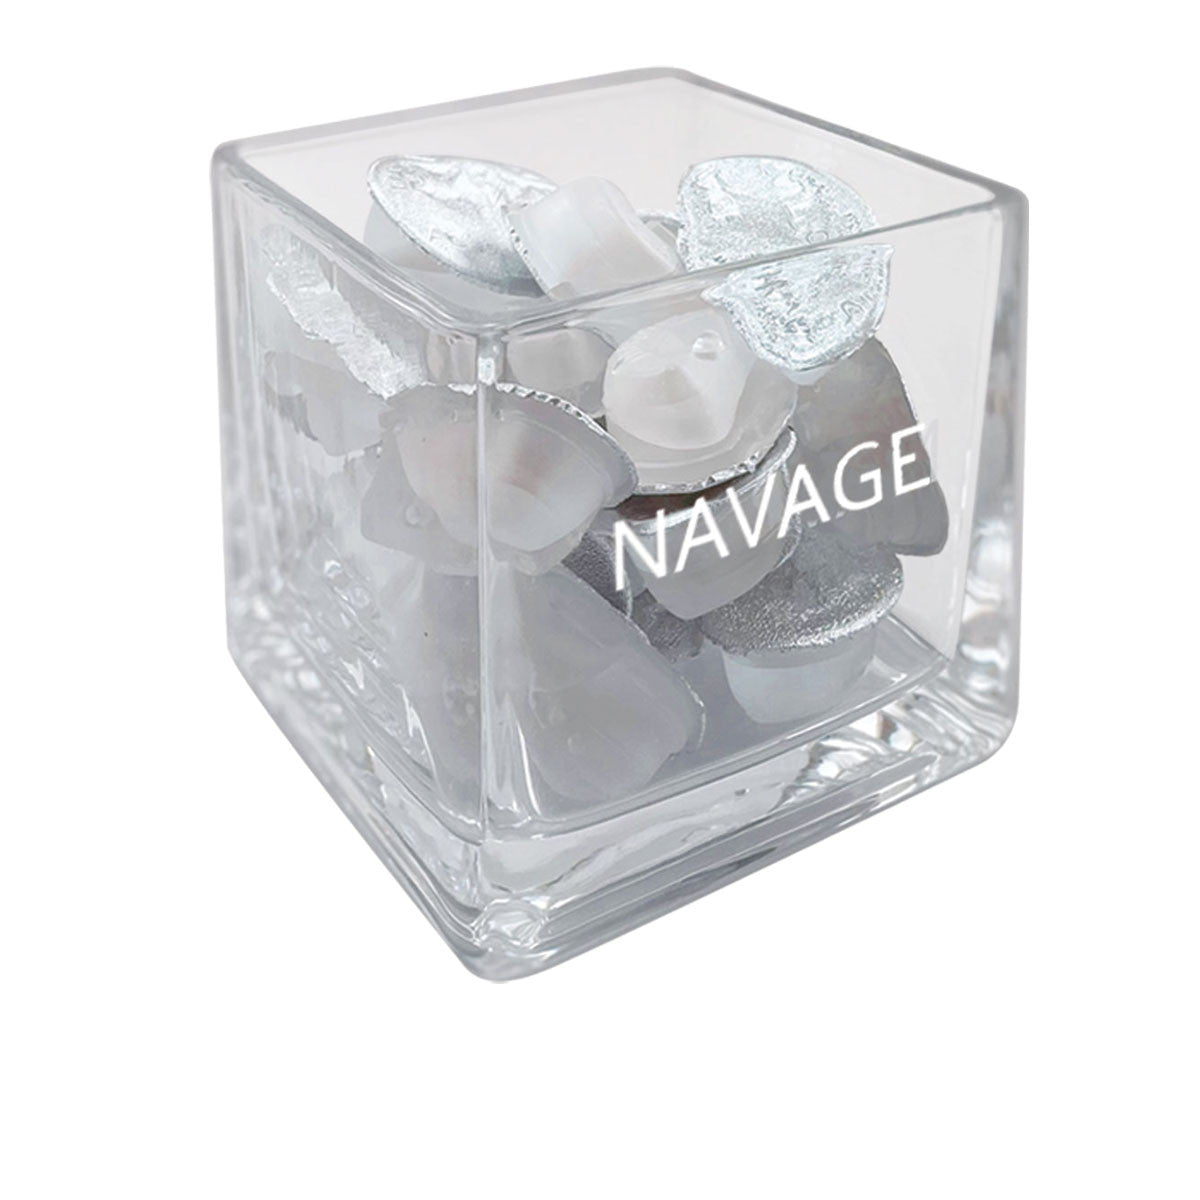 Navage SaltPods - Original, 60 ct